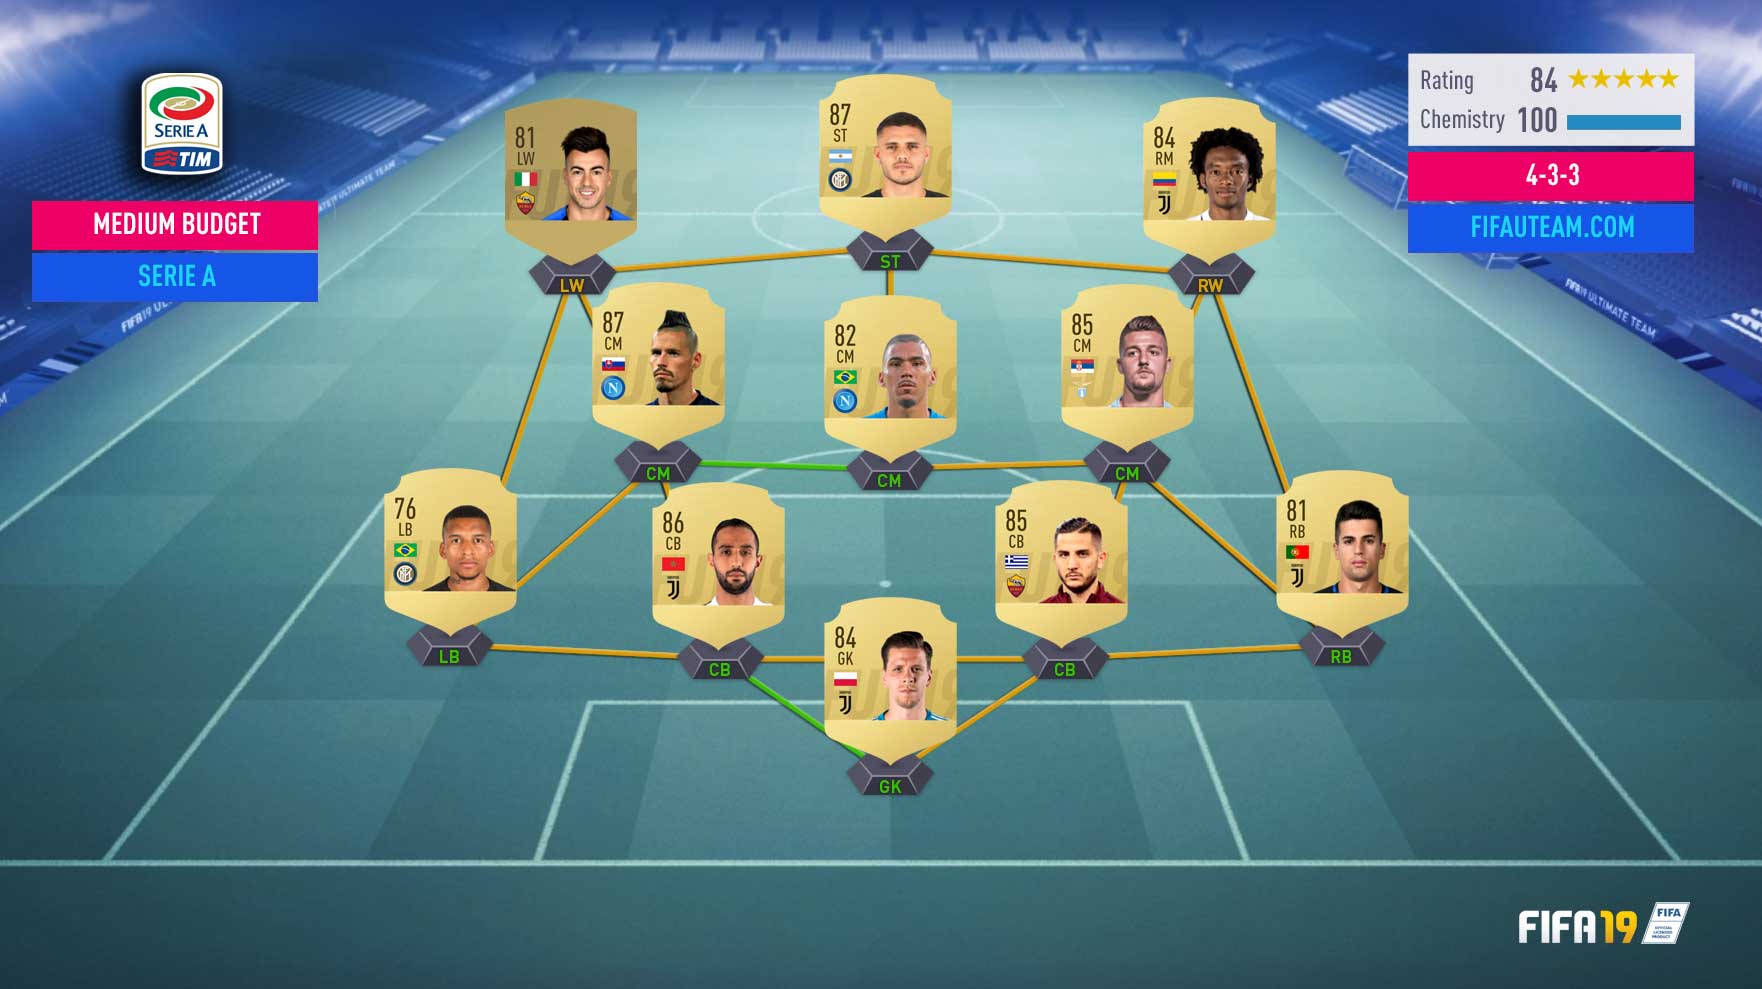 FIFA 19 Serie A Squad Guide